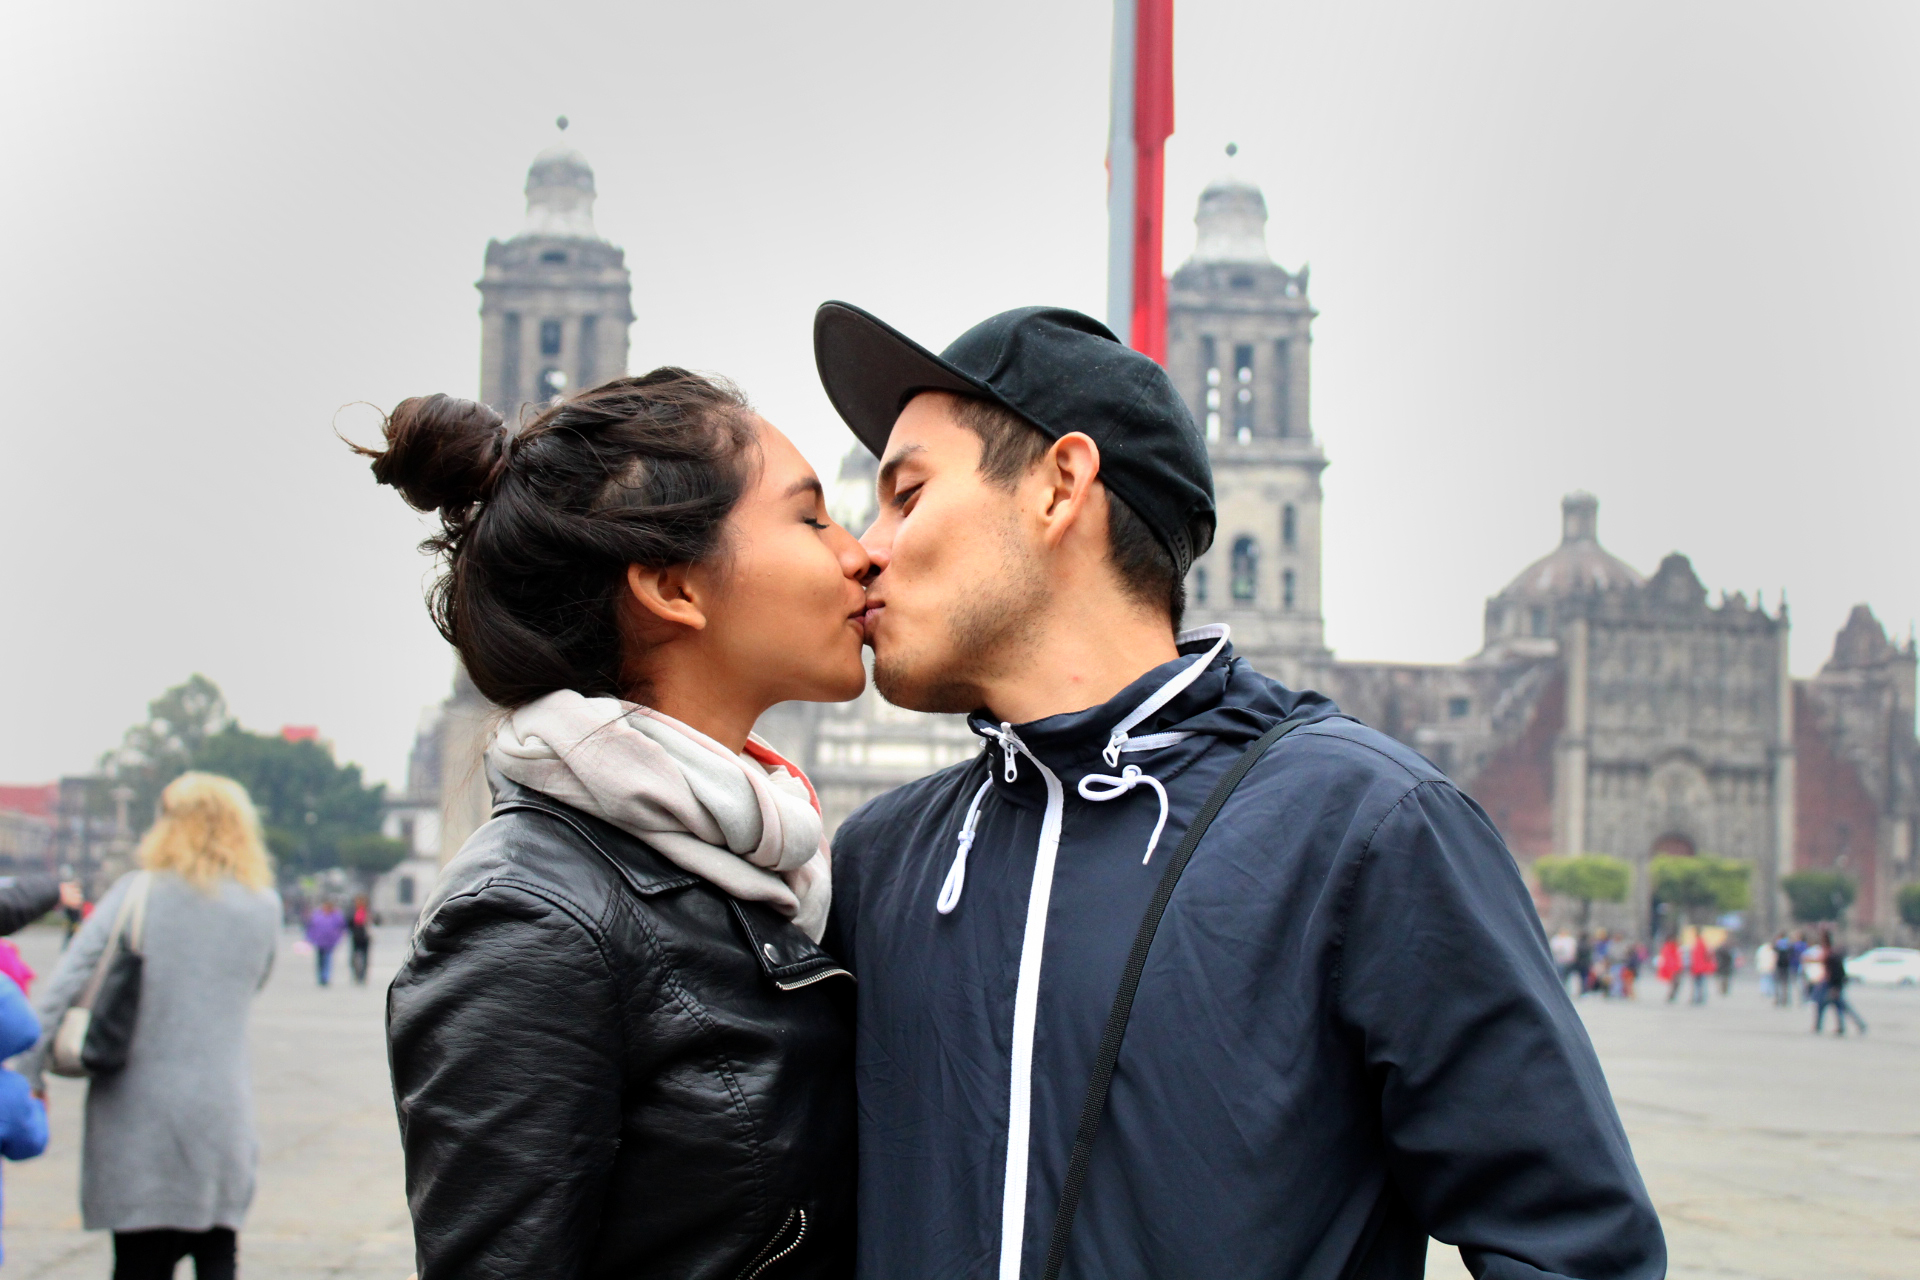 En México, de acuerdo a la Encuesta Intercensal 2015 del INEGI, 13.5% de las y los jóvenes están casados, 15.3% viven en unión libre, y 68.3% son solteros.